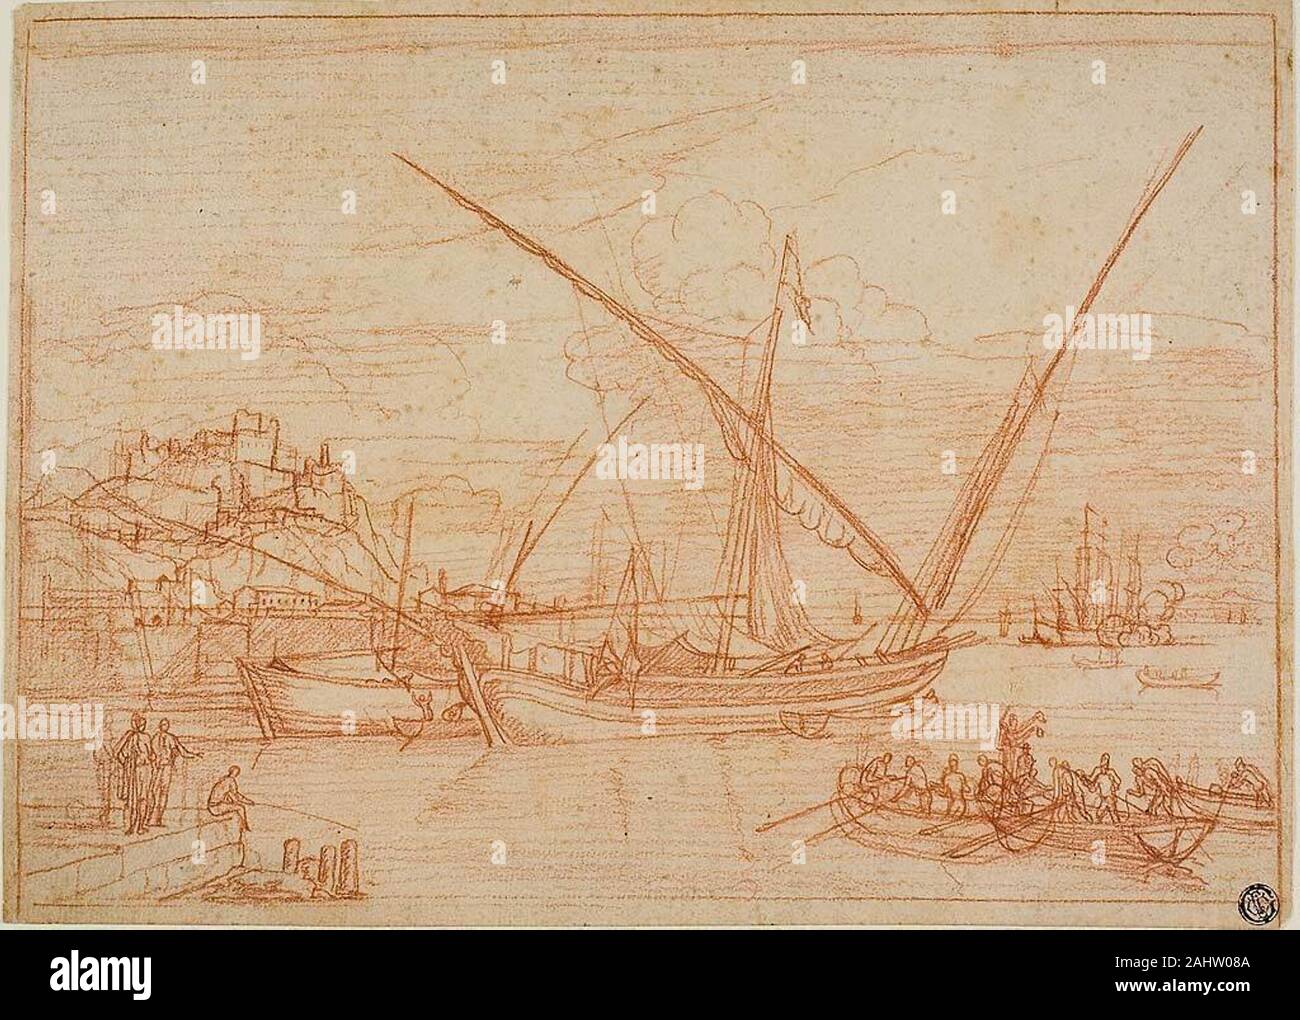 Adrien Manglard. Vue d'un port des navires dans un port. 1753. La France. Craie rouge sur papier vergé chamois Banque D'Images